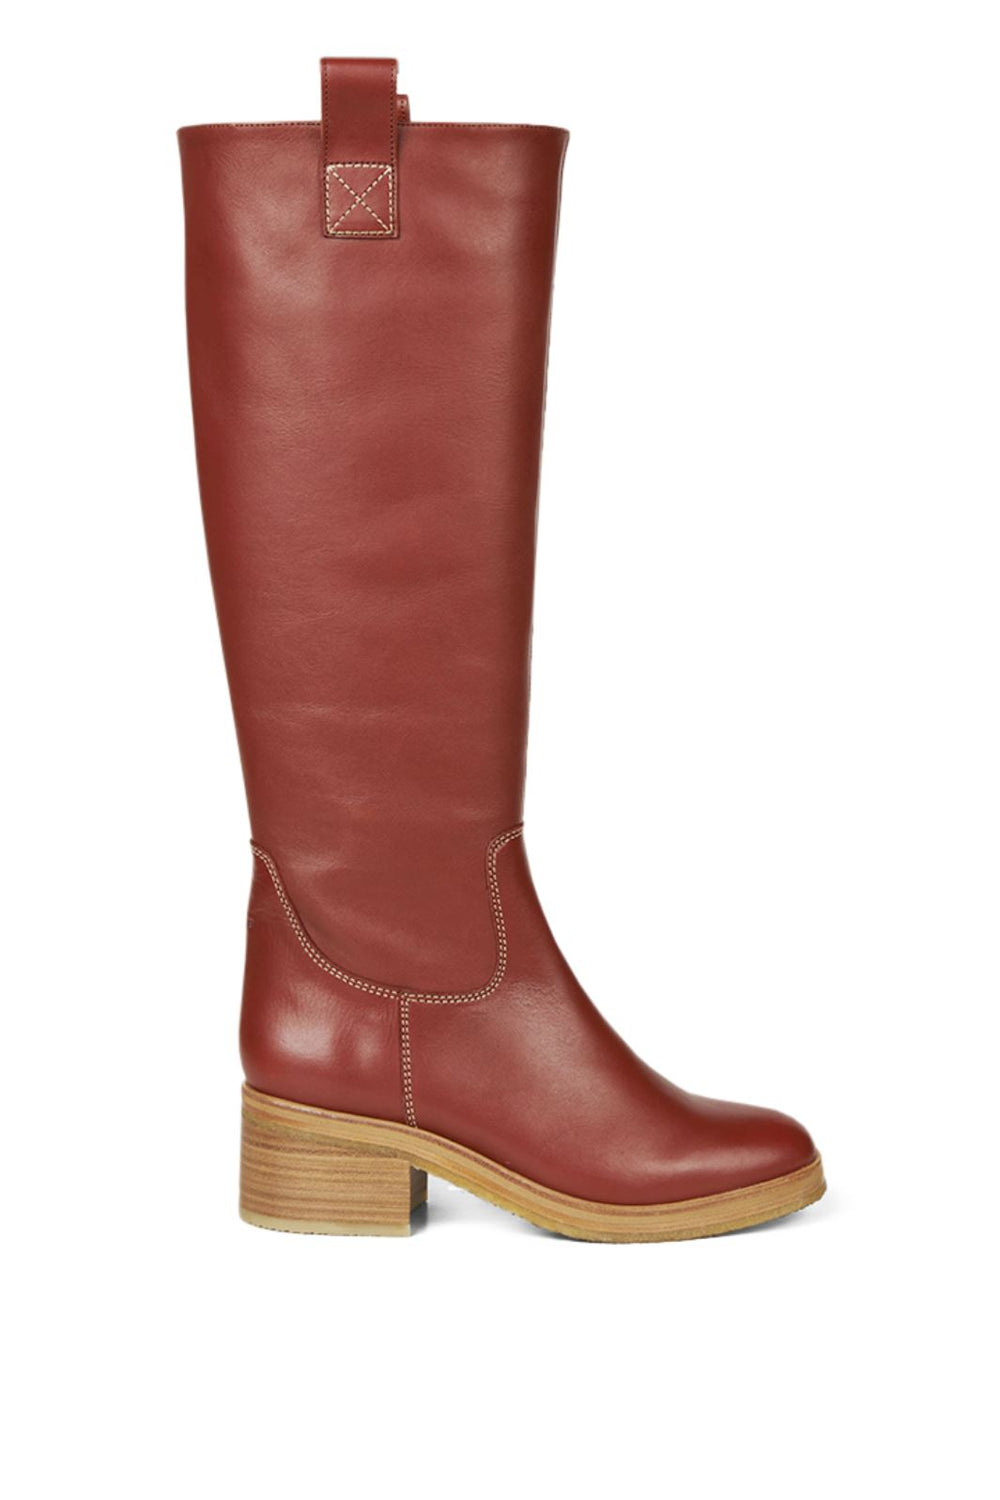 Angulus - High-leg boot with block heel and zipper - 1705 Støvler 